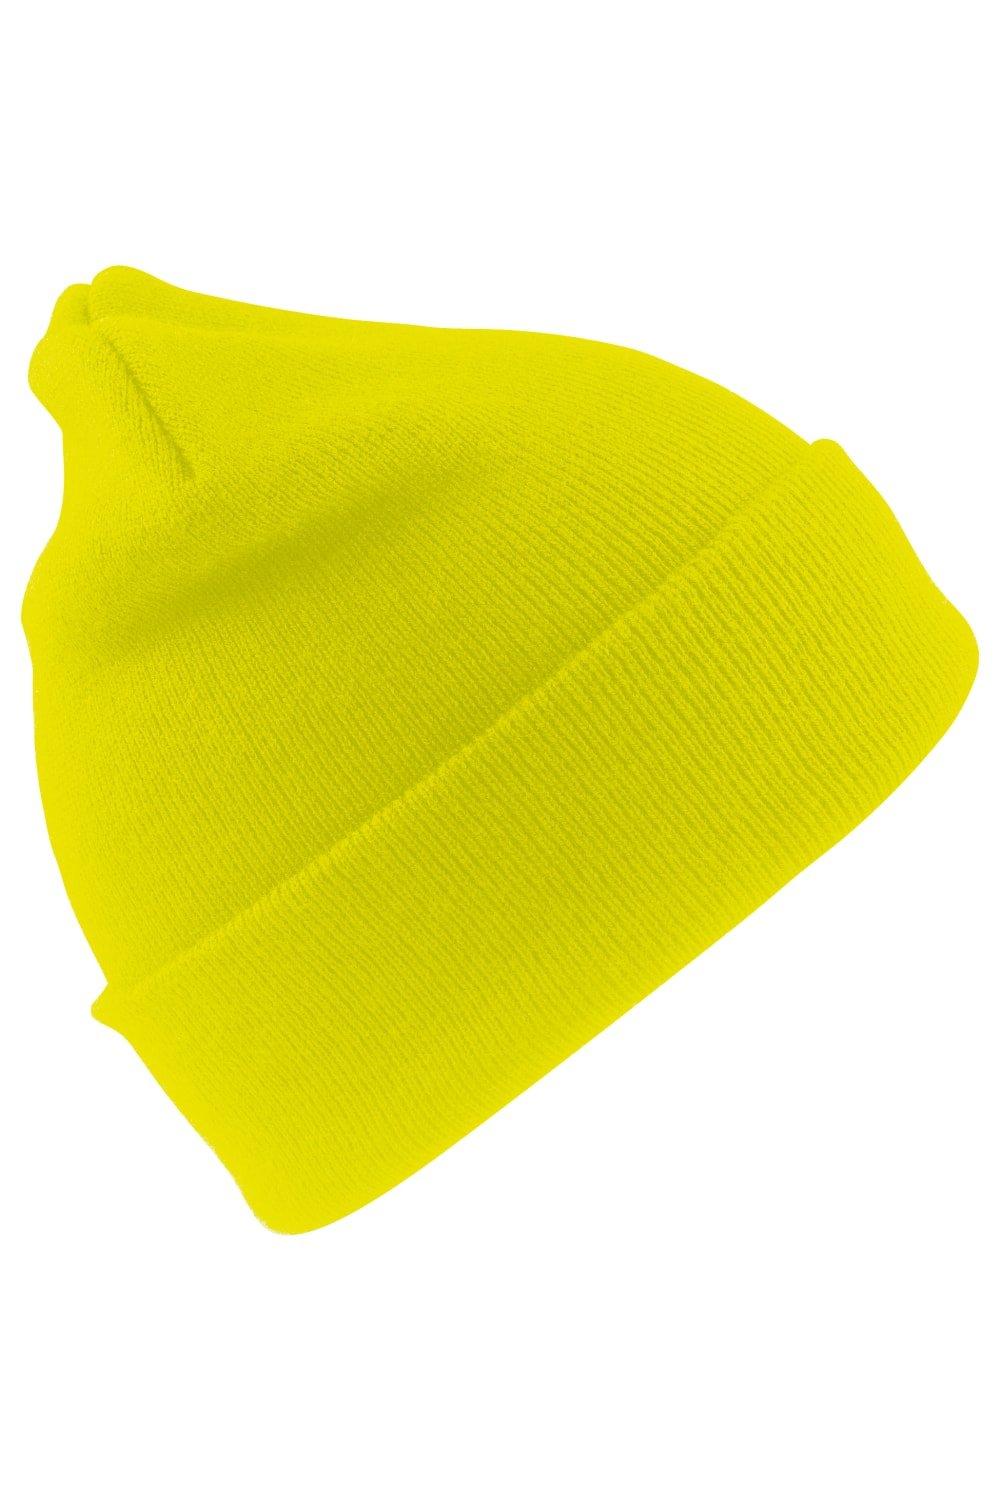 Шерстяная термолыжная/зимняя шапка с утеплителем Thinsulate 3M Result, желтый пряжа семеновская пряжа natasha 215 георгин 5 шт по 100 г